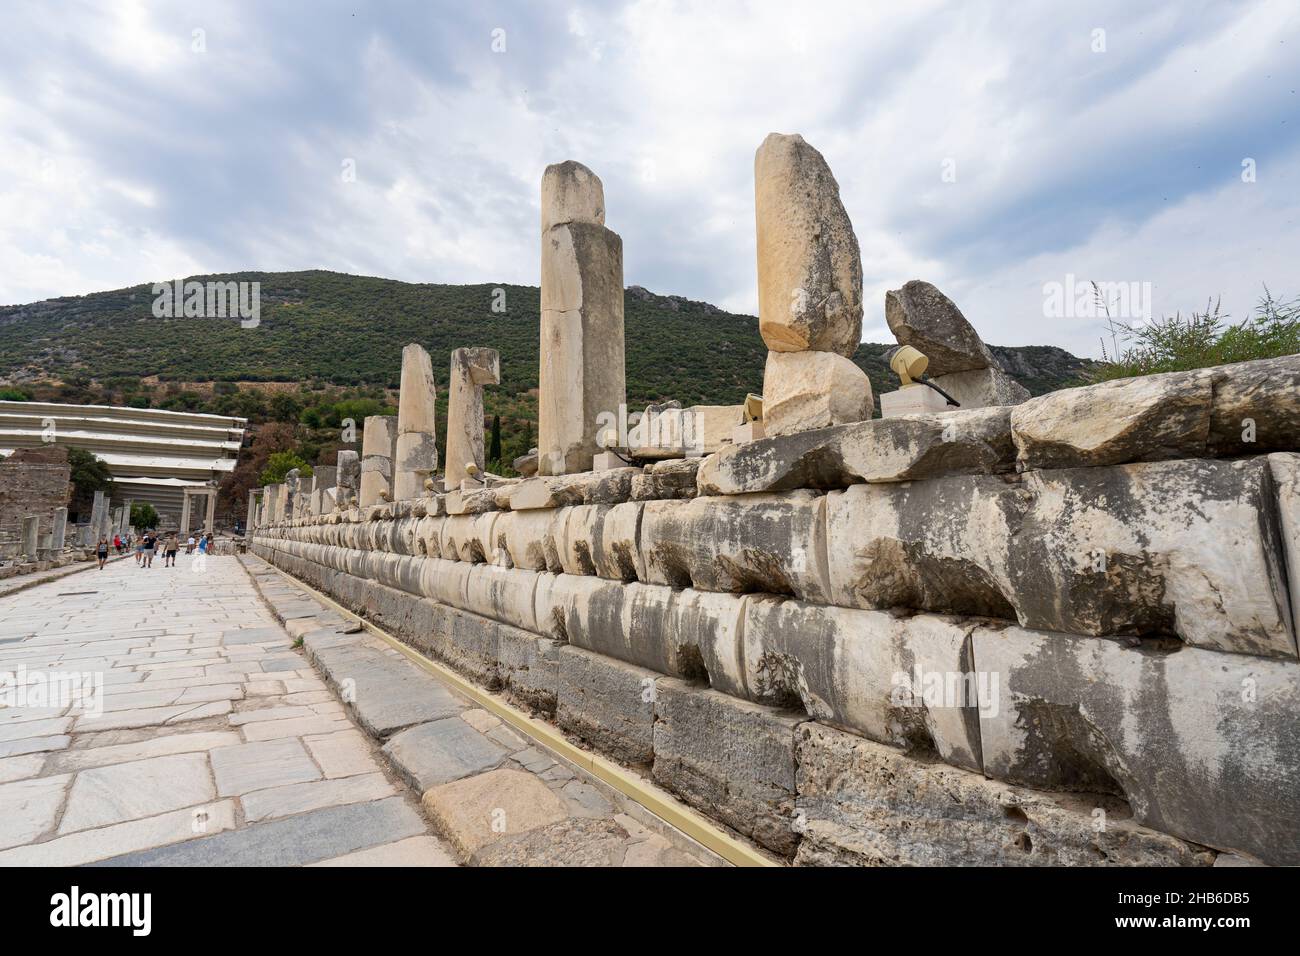 Vue sur la ville antique d'Éphèse.Ephèse était une ville de la Grèce antique sur la côte d'Ionia, au sud-ouest de Selcuk actuel dans la province d'Izmir, en Turquie. Banque D'Images